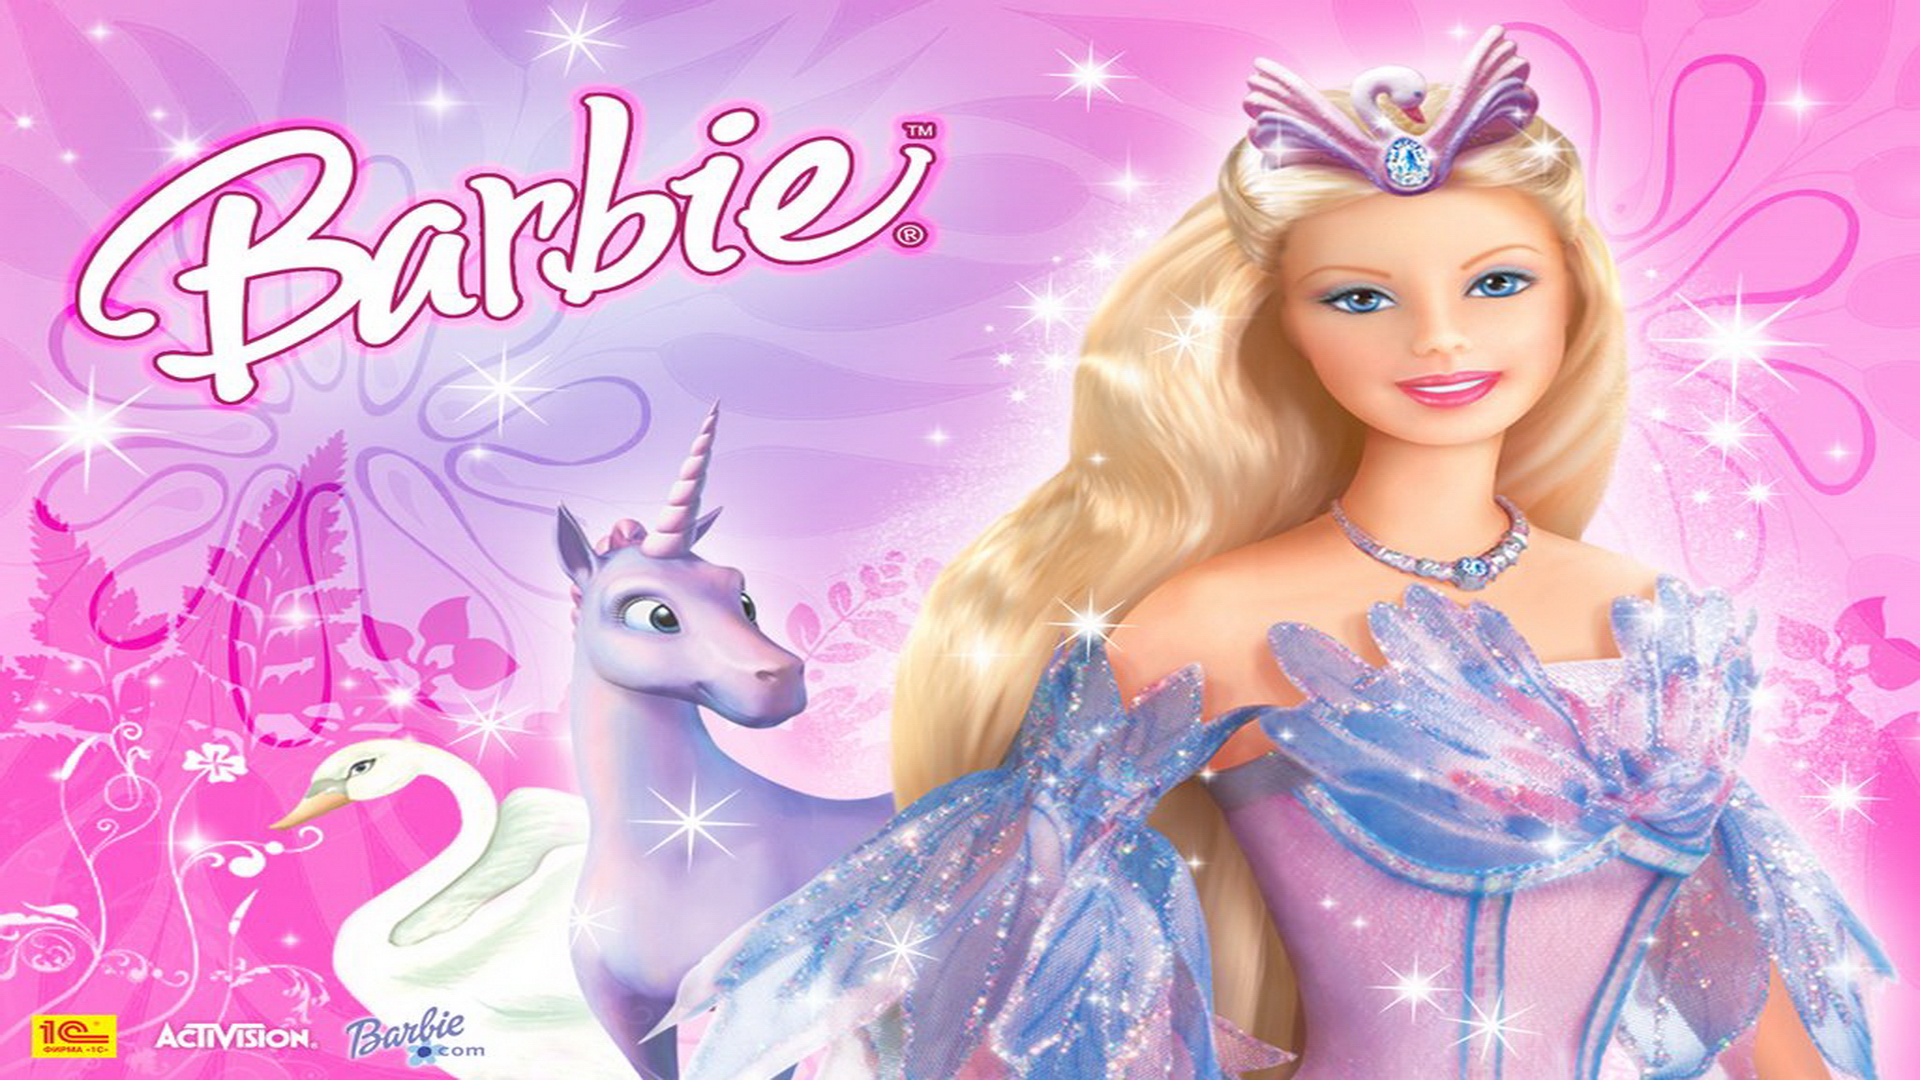 fond d'écran barbie girl,poupée,barbie,rose,jouet,personnage fictif